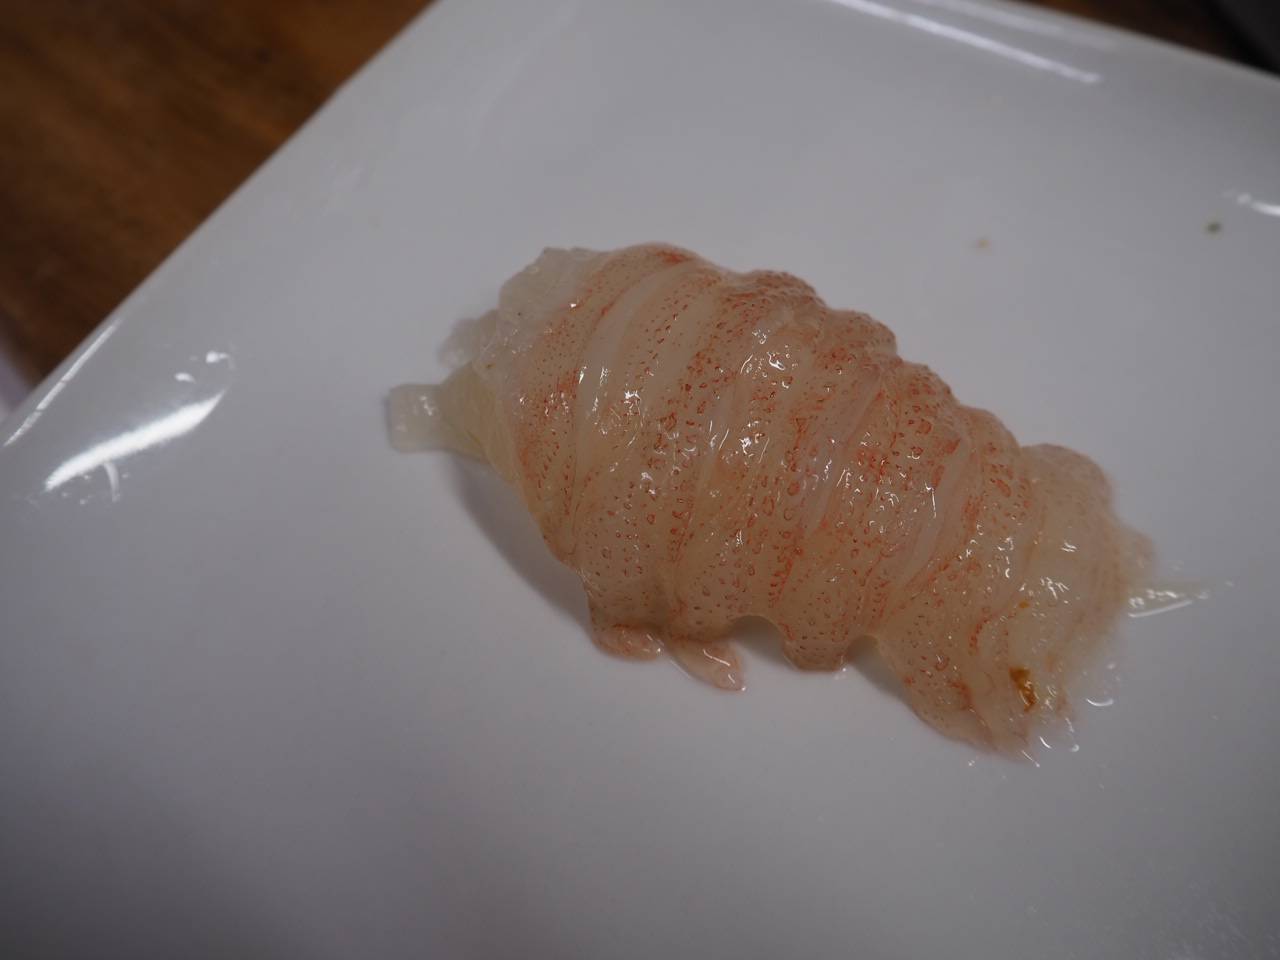 セミエビの海鮮丼が伊勢海老より美味いって本当 レシピ公開 かっつ飯 飯テロ検定準2級保持者のバズり飯 インスタ界最強の男飯